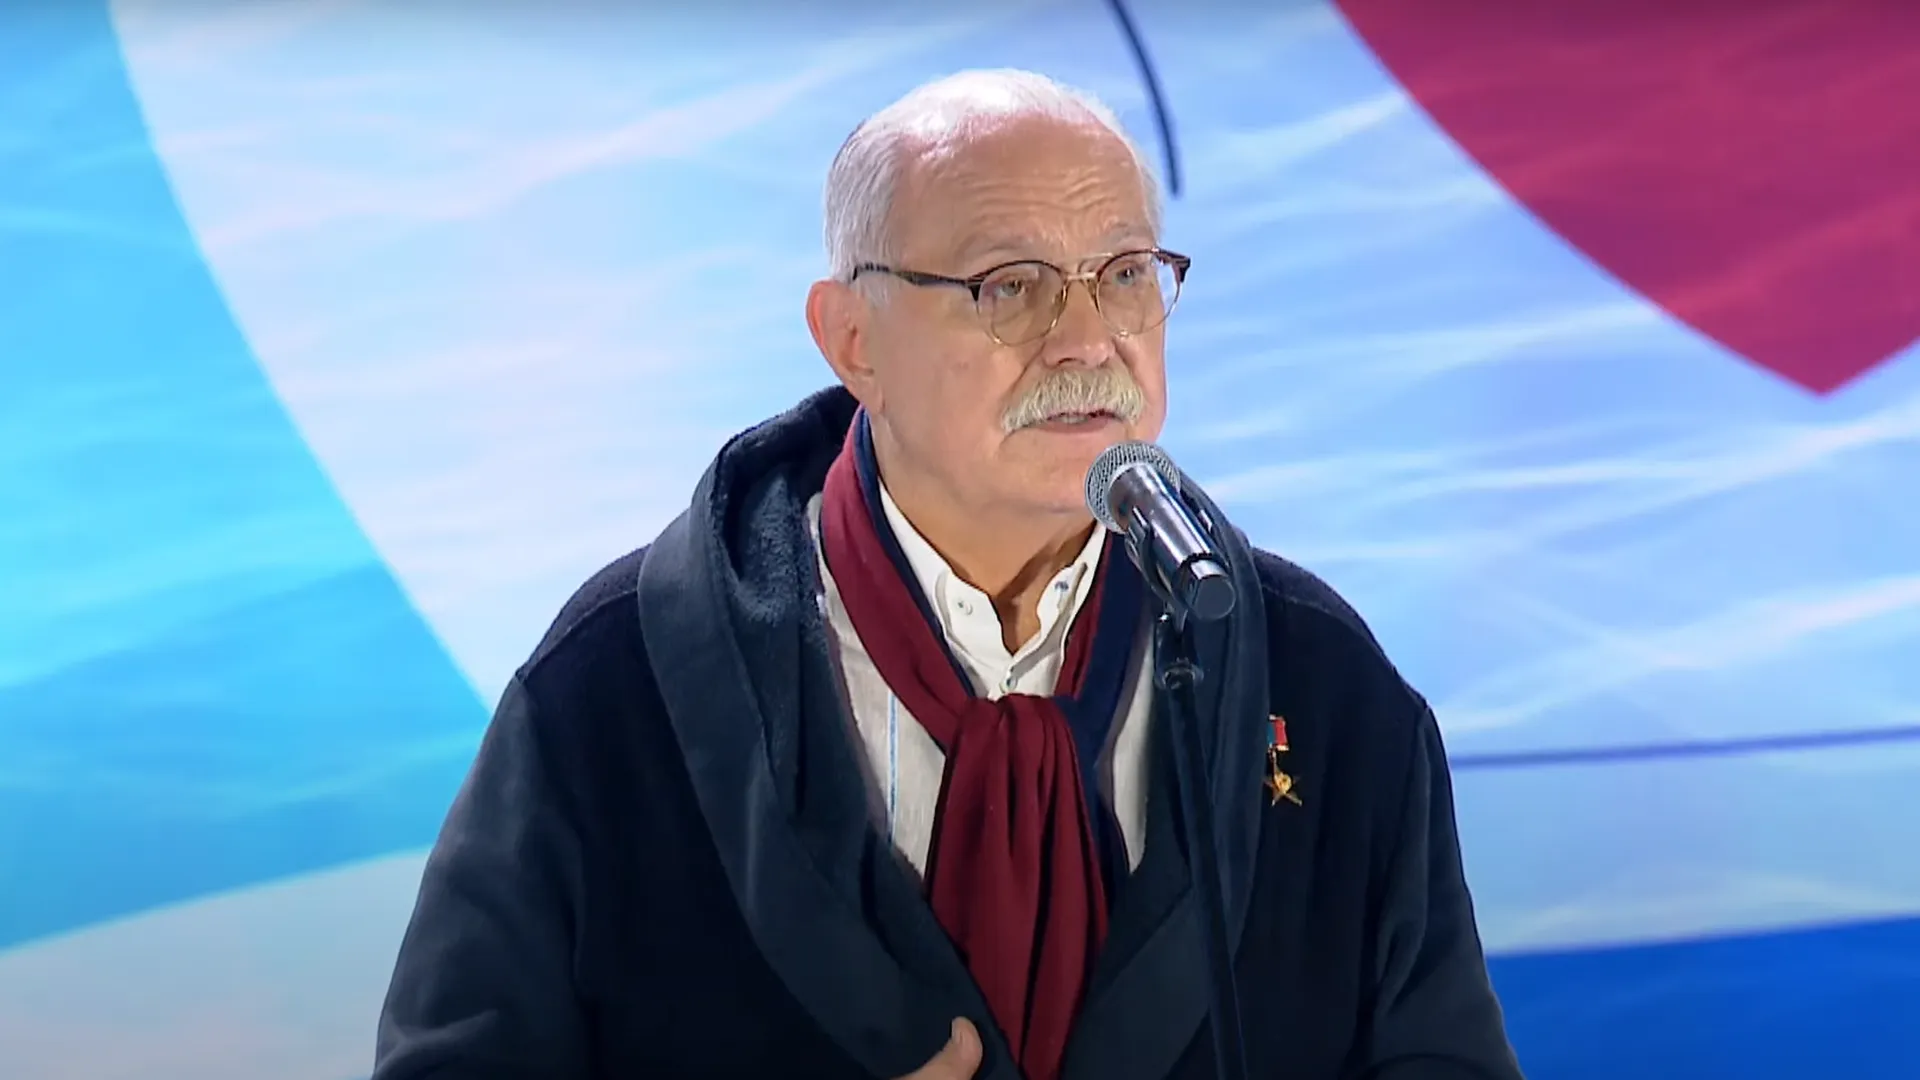 Михалков в униформе «Бесогон ТВ» проголосовал в Крыму